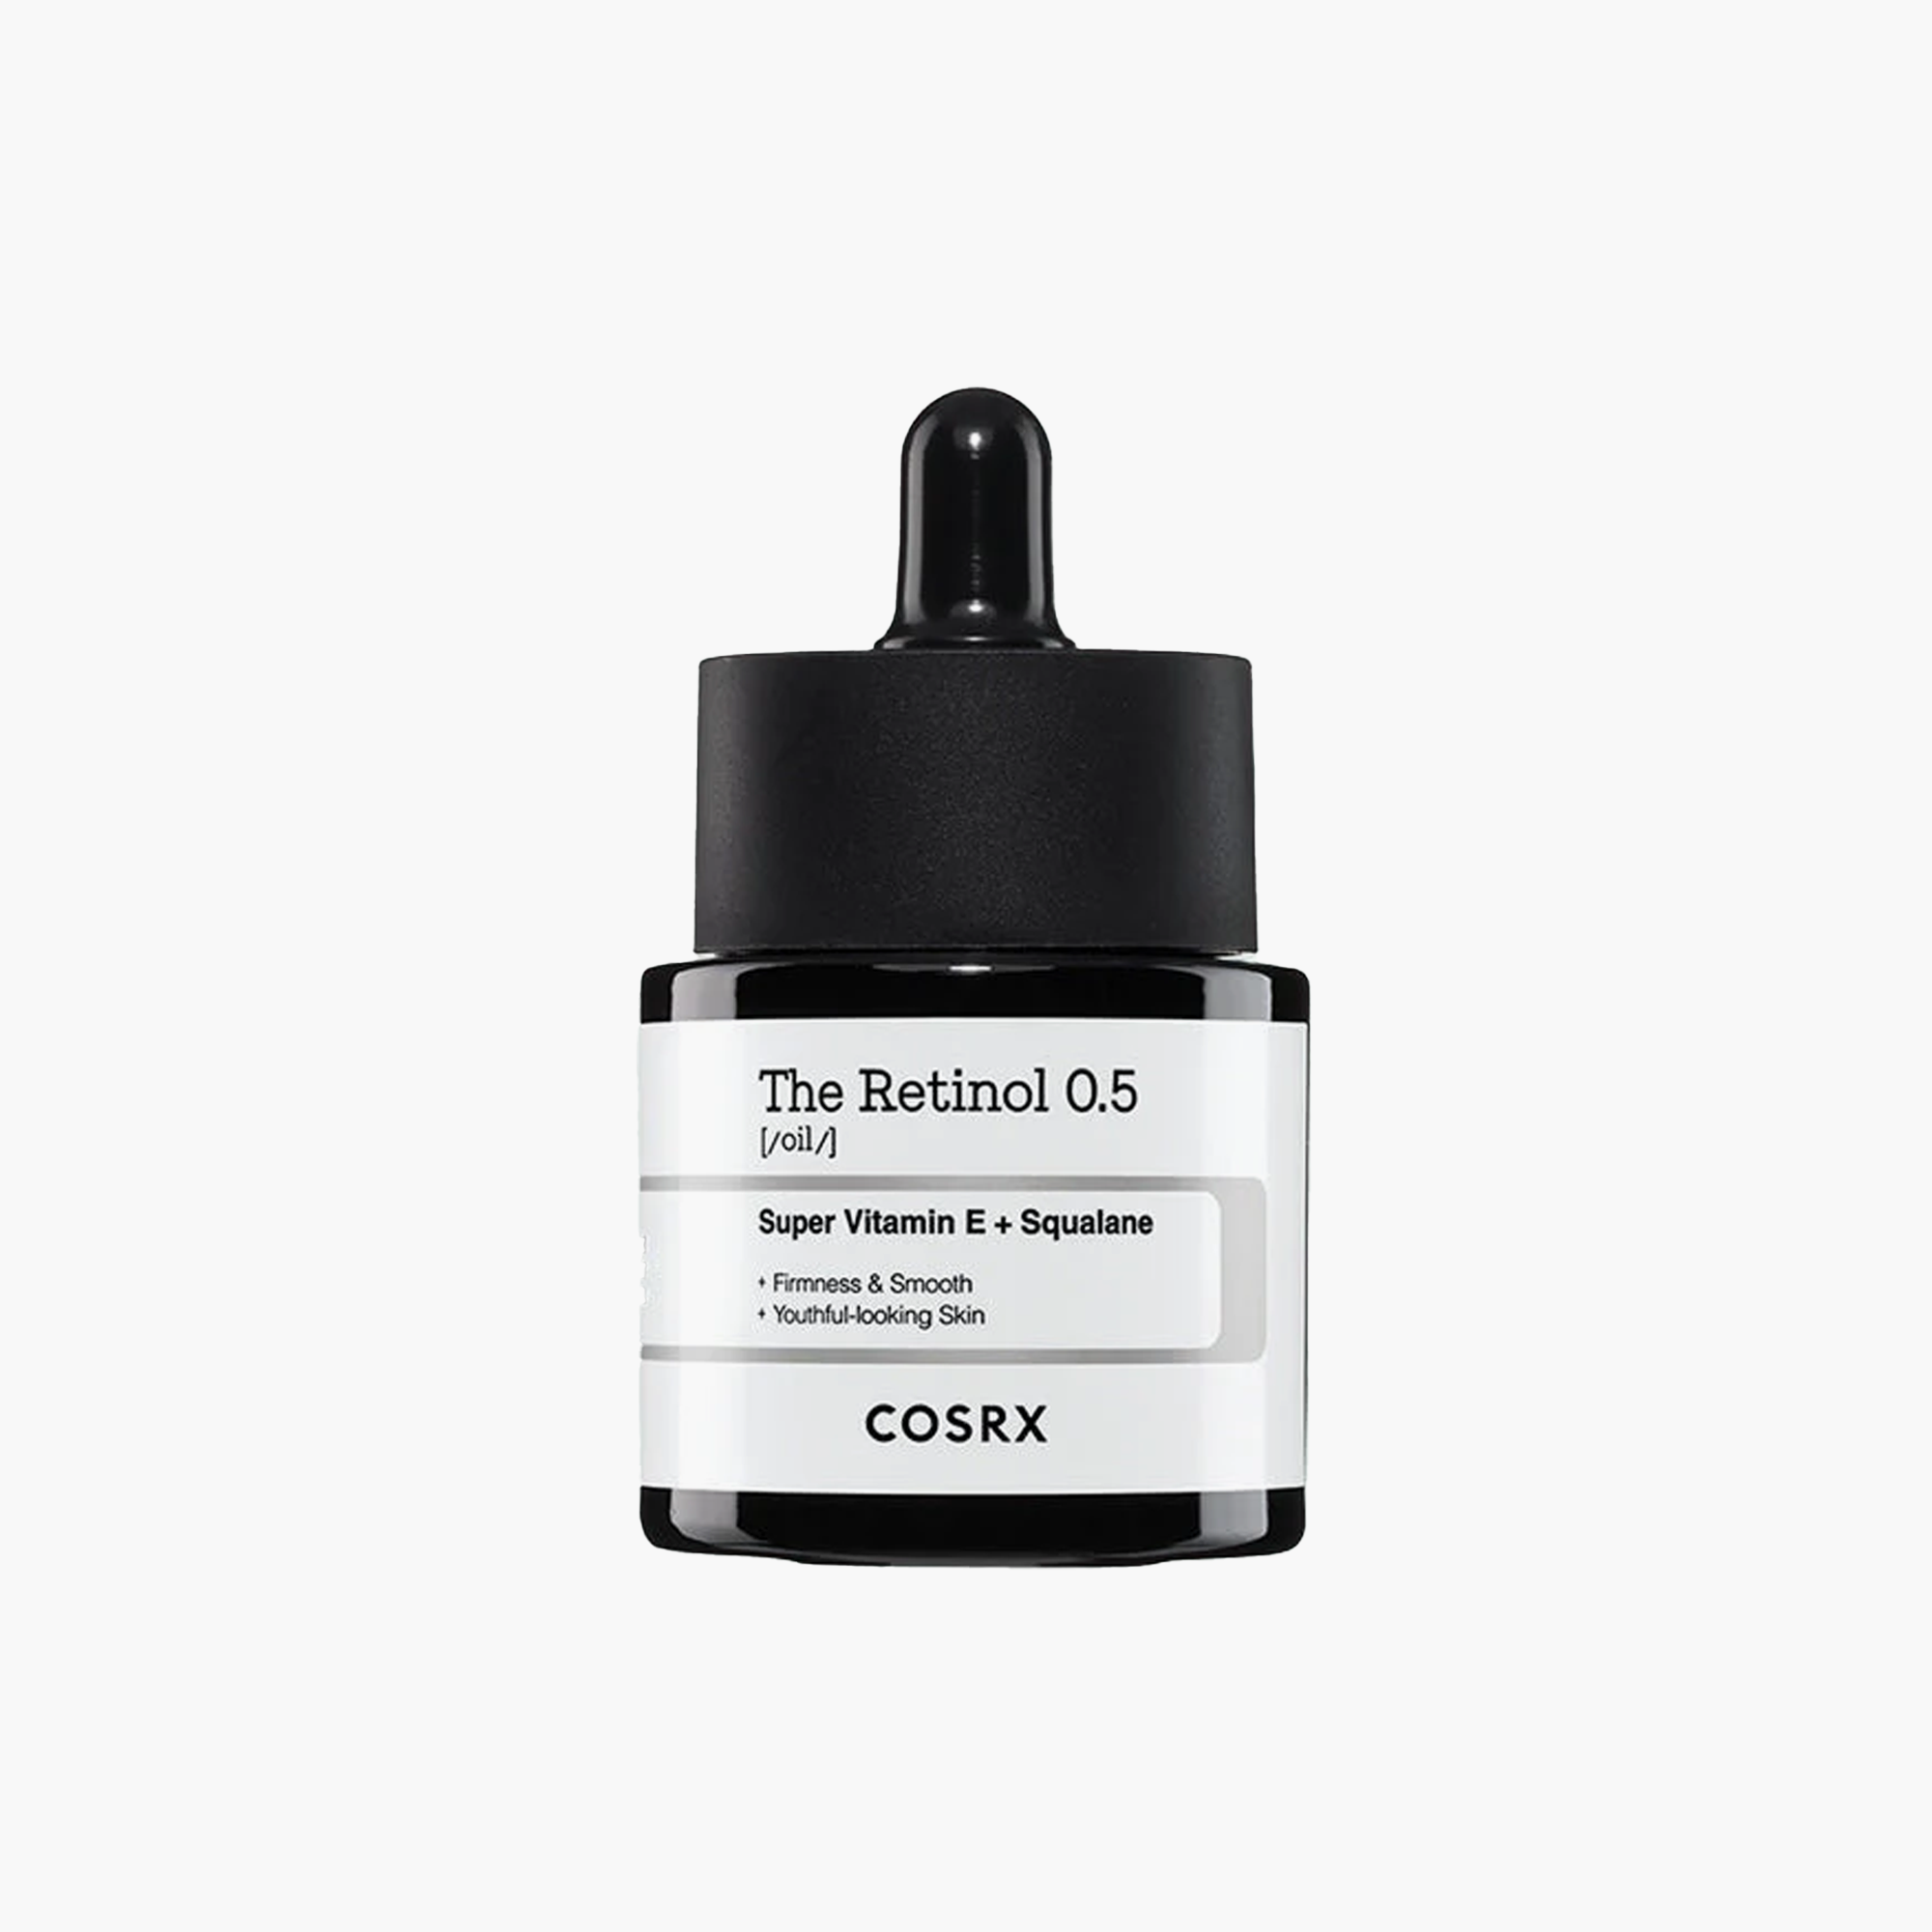 COSRX The Retinol 0.5 Oil Super Vitamin E + Squalane 20ml